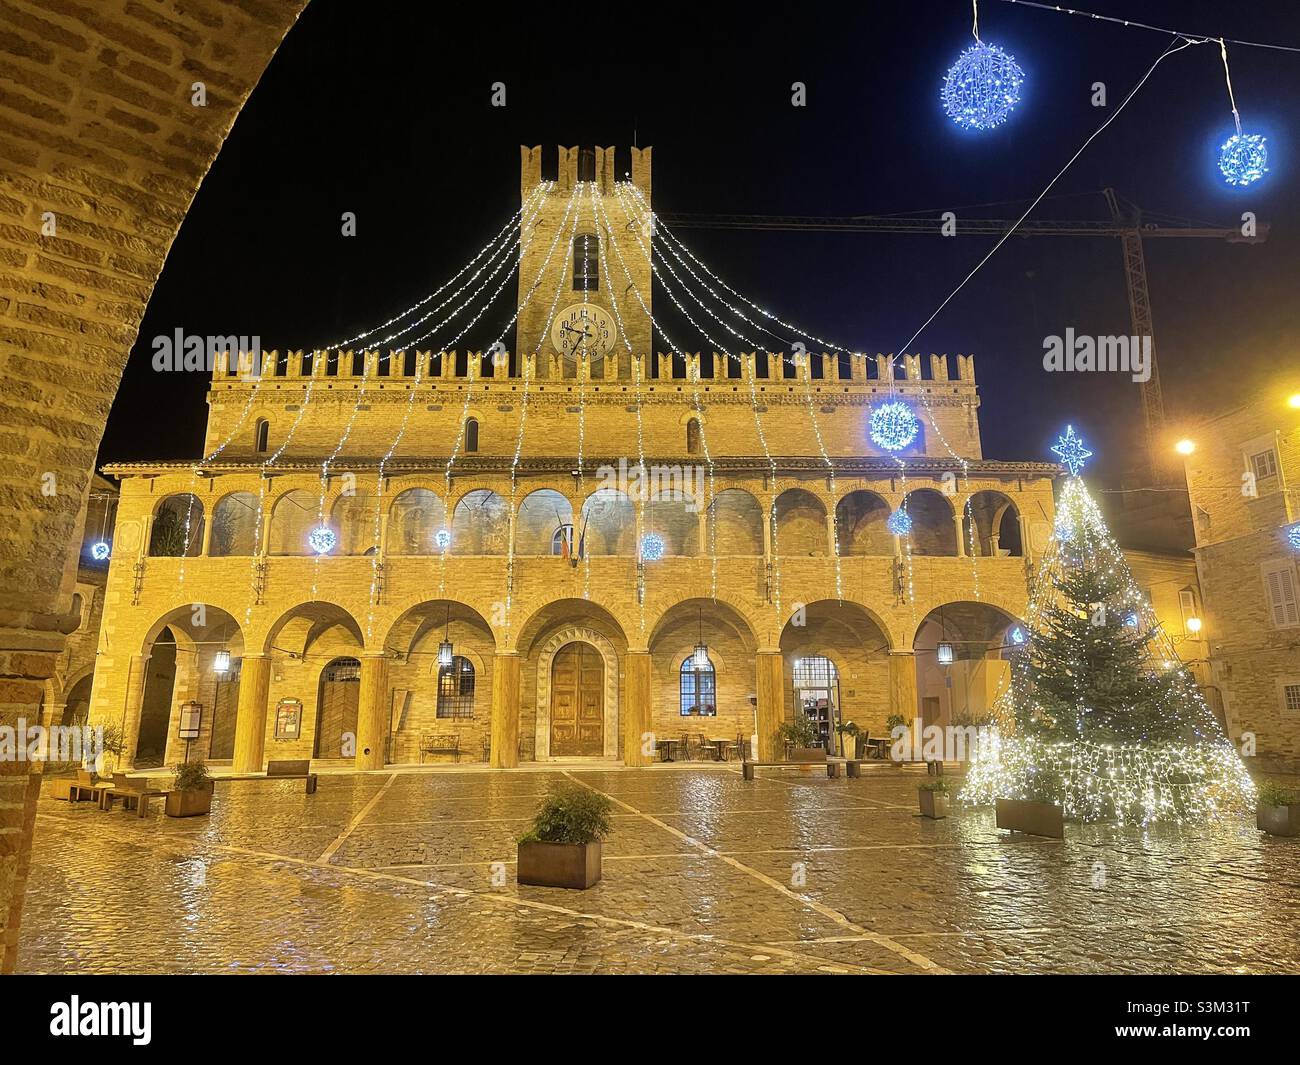 Edificio del Ayuntamiento, vista nocturna, Offida, región de Marche, Italia Foto de stock